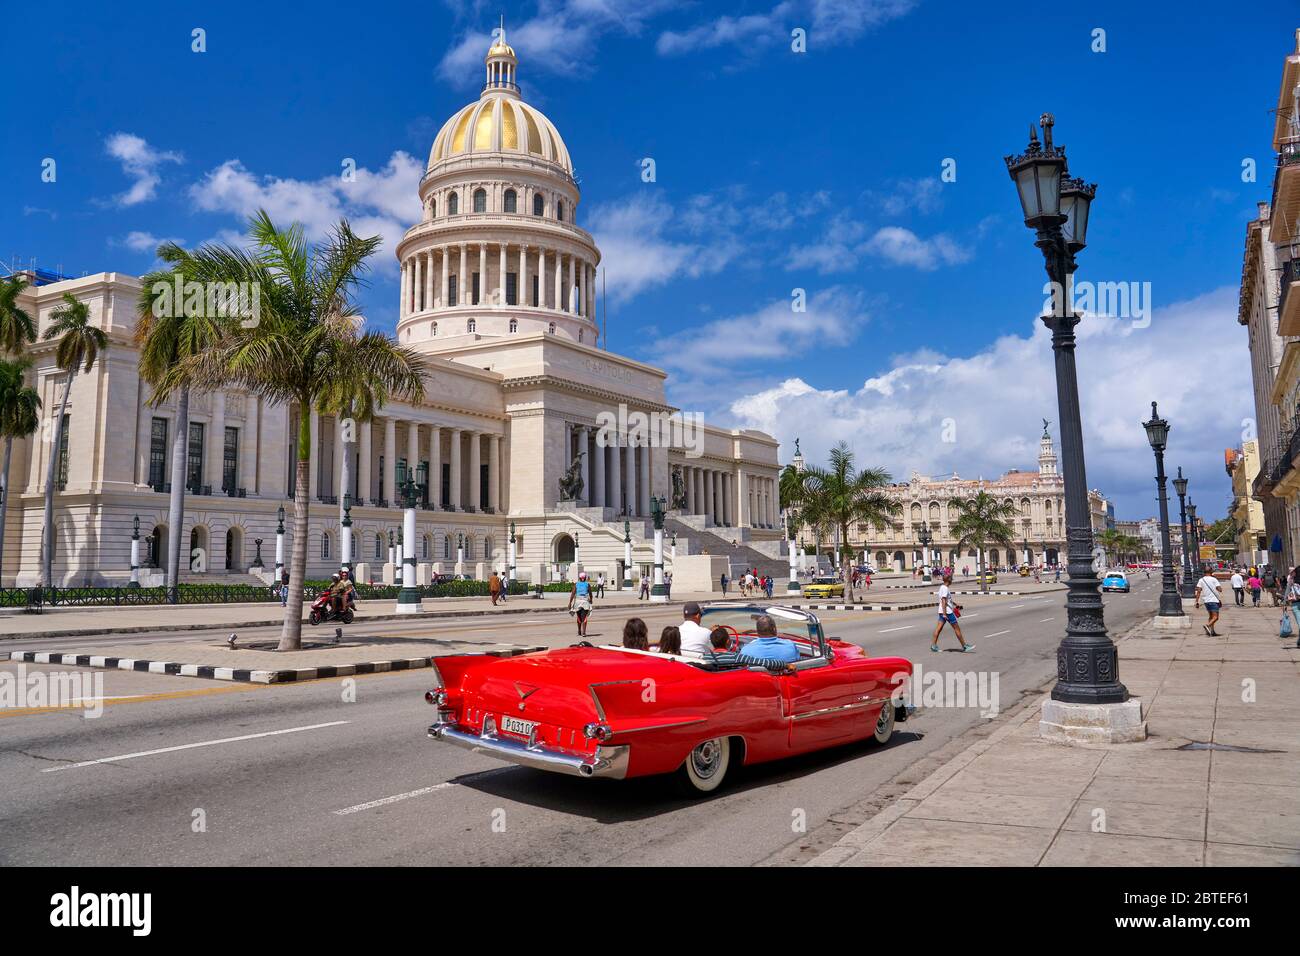 Capitolio Nacional y viejo coche rojo americano, la Habana, Cuba Foto de stock